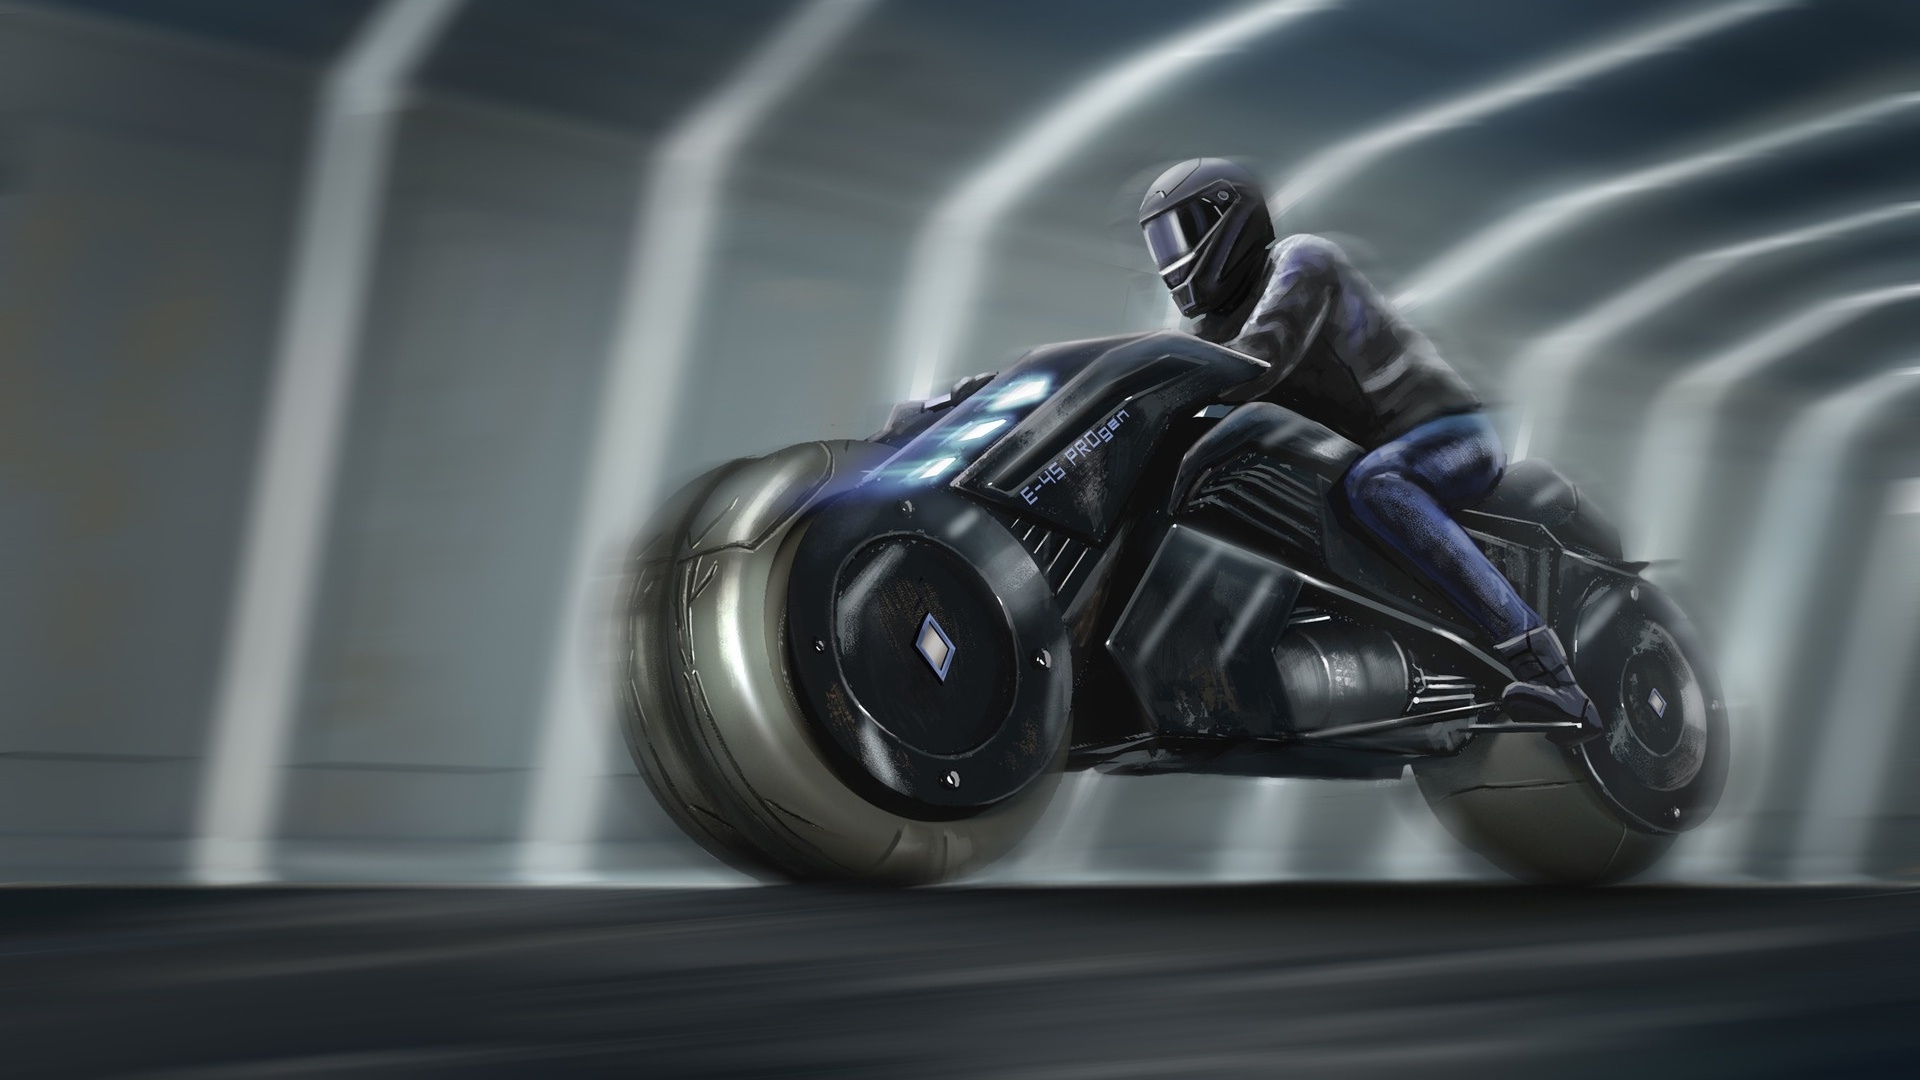 Cyberpunk motorcycle art фото 59